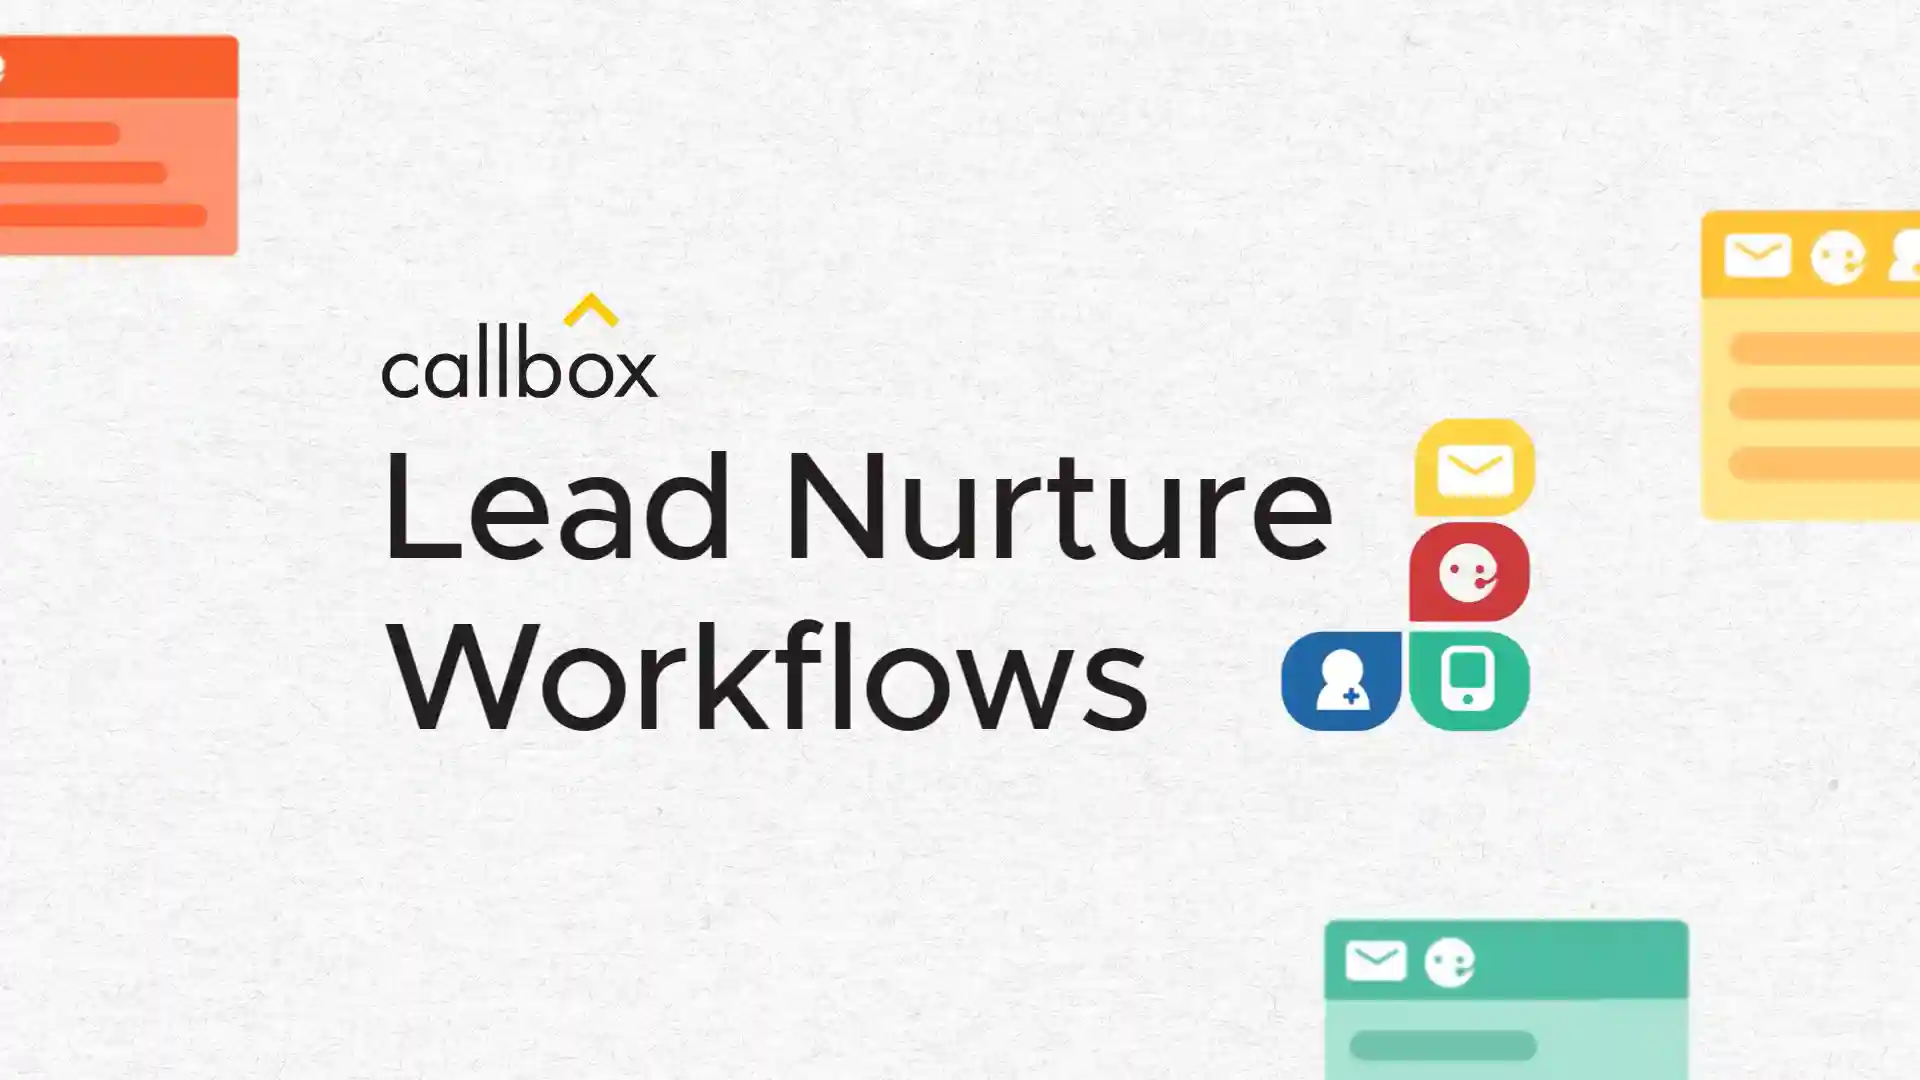 Callbox Lead Nurture Workflows